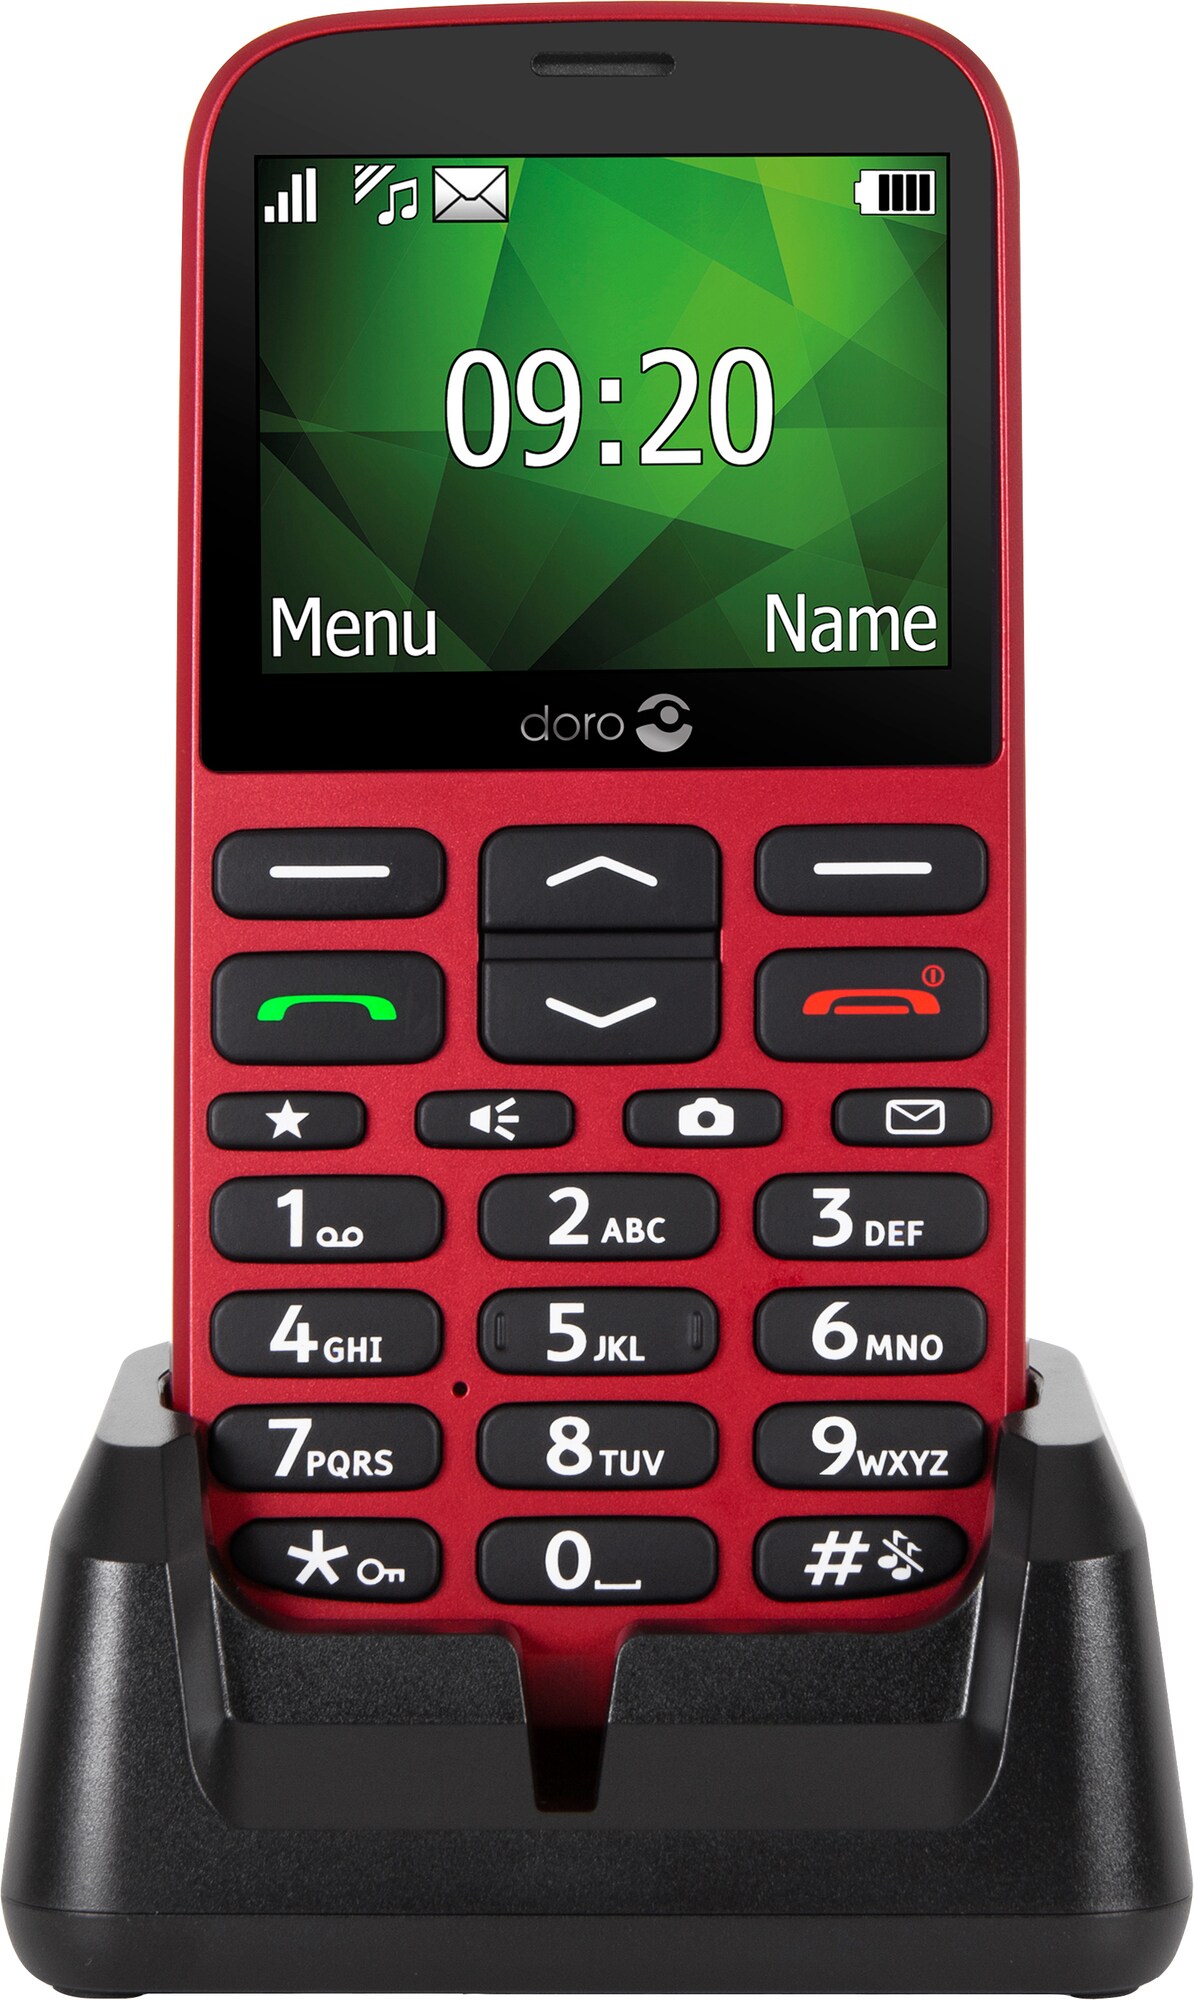 Doro 1375 mobiltelefon (rød) - Mobiltelefon - Elkjøp